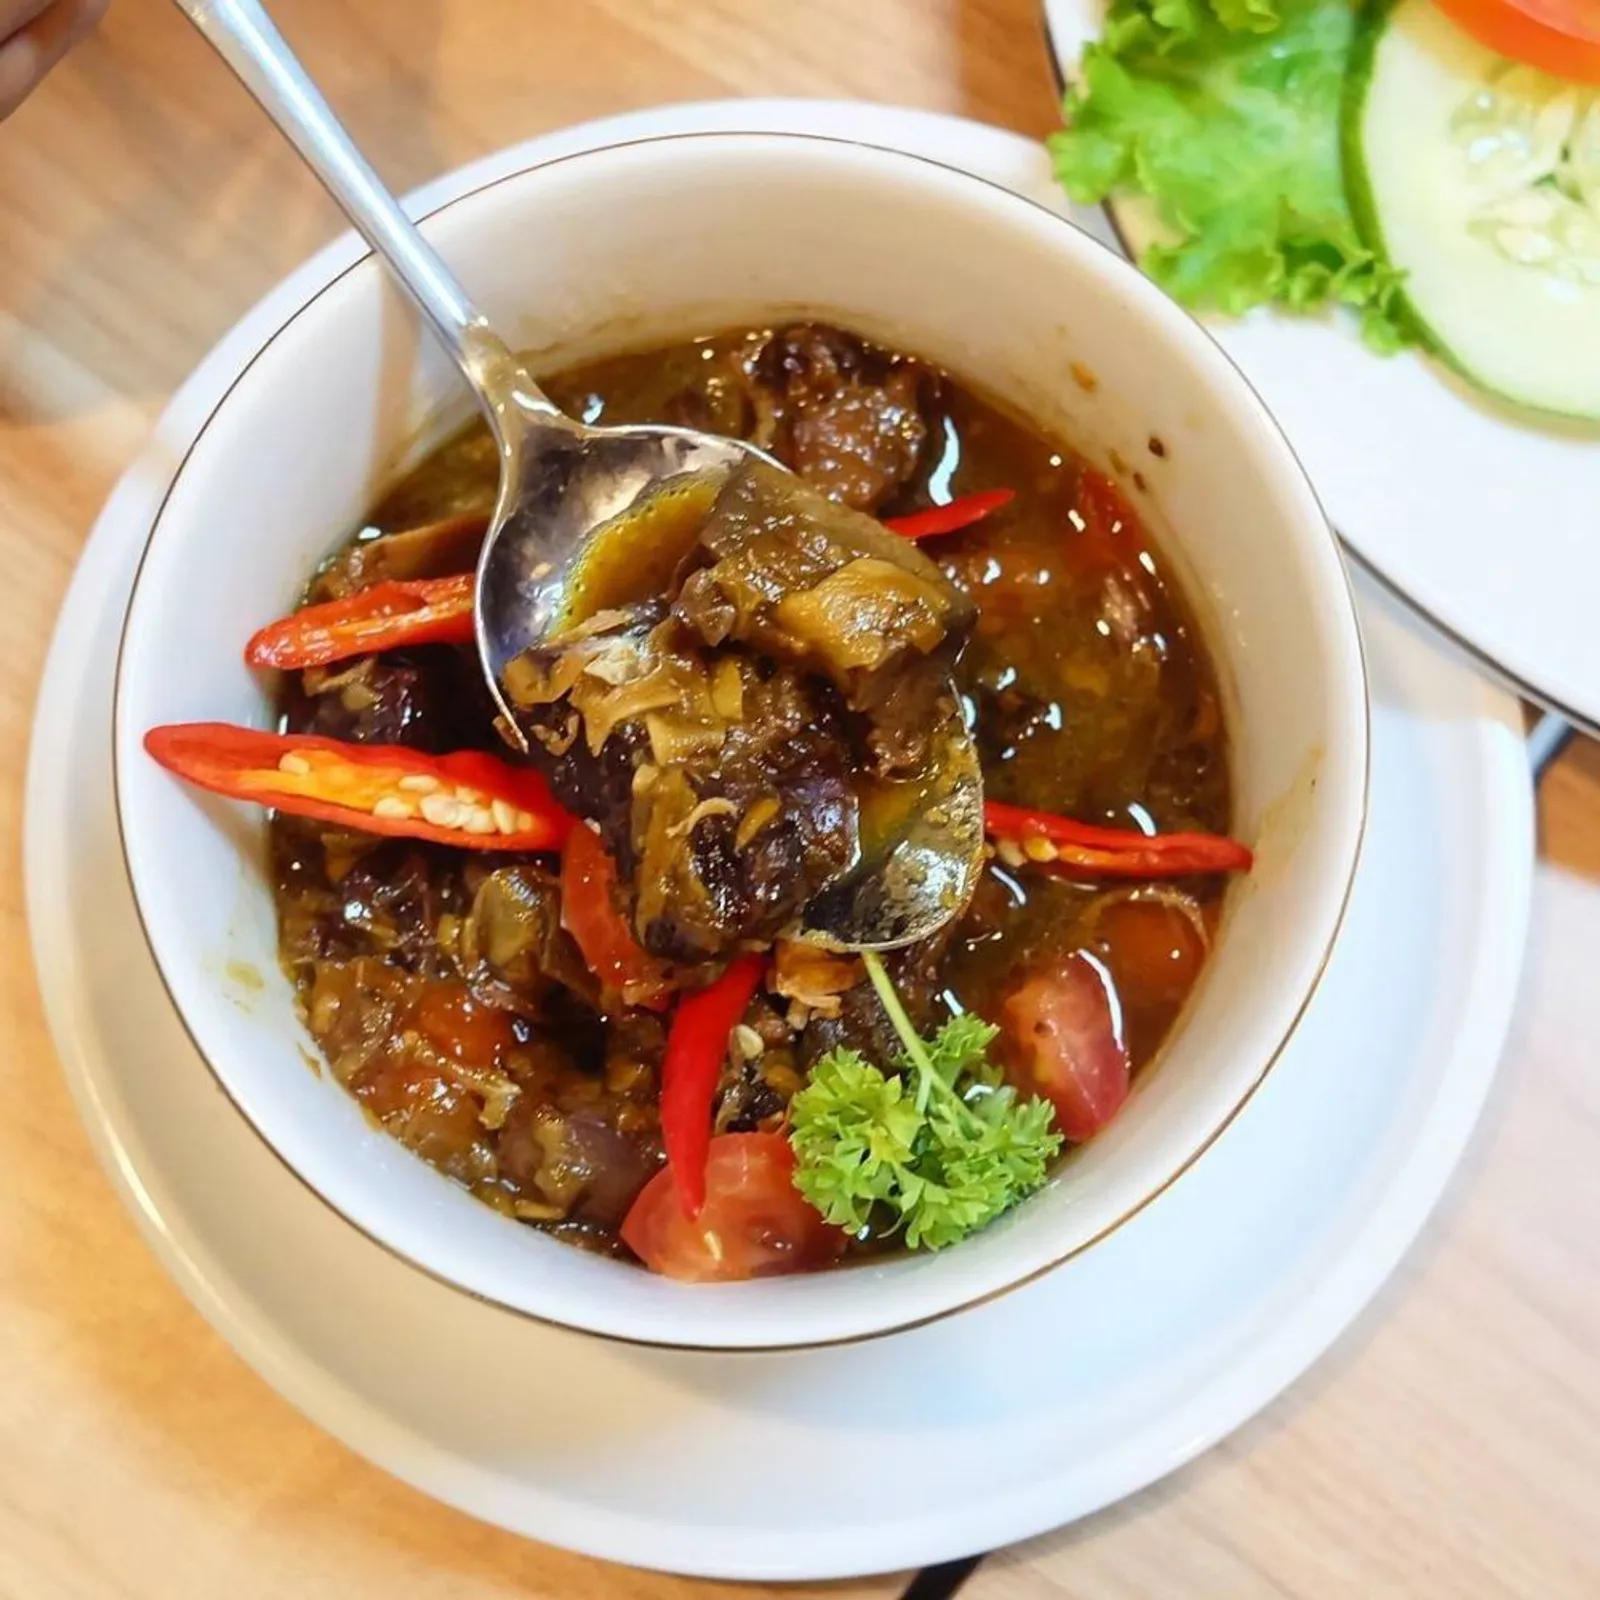 10 Makanan Khas Banten yang Paling Bikin Ngiler, Wajib Coba!